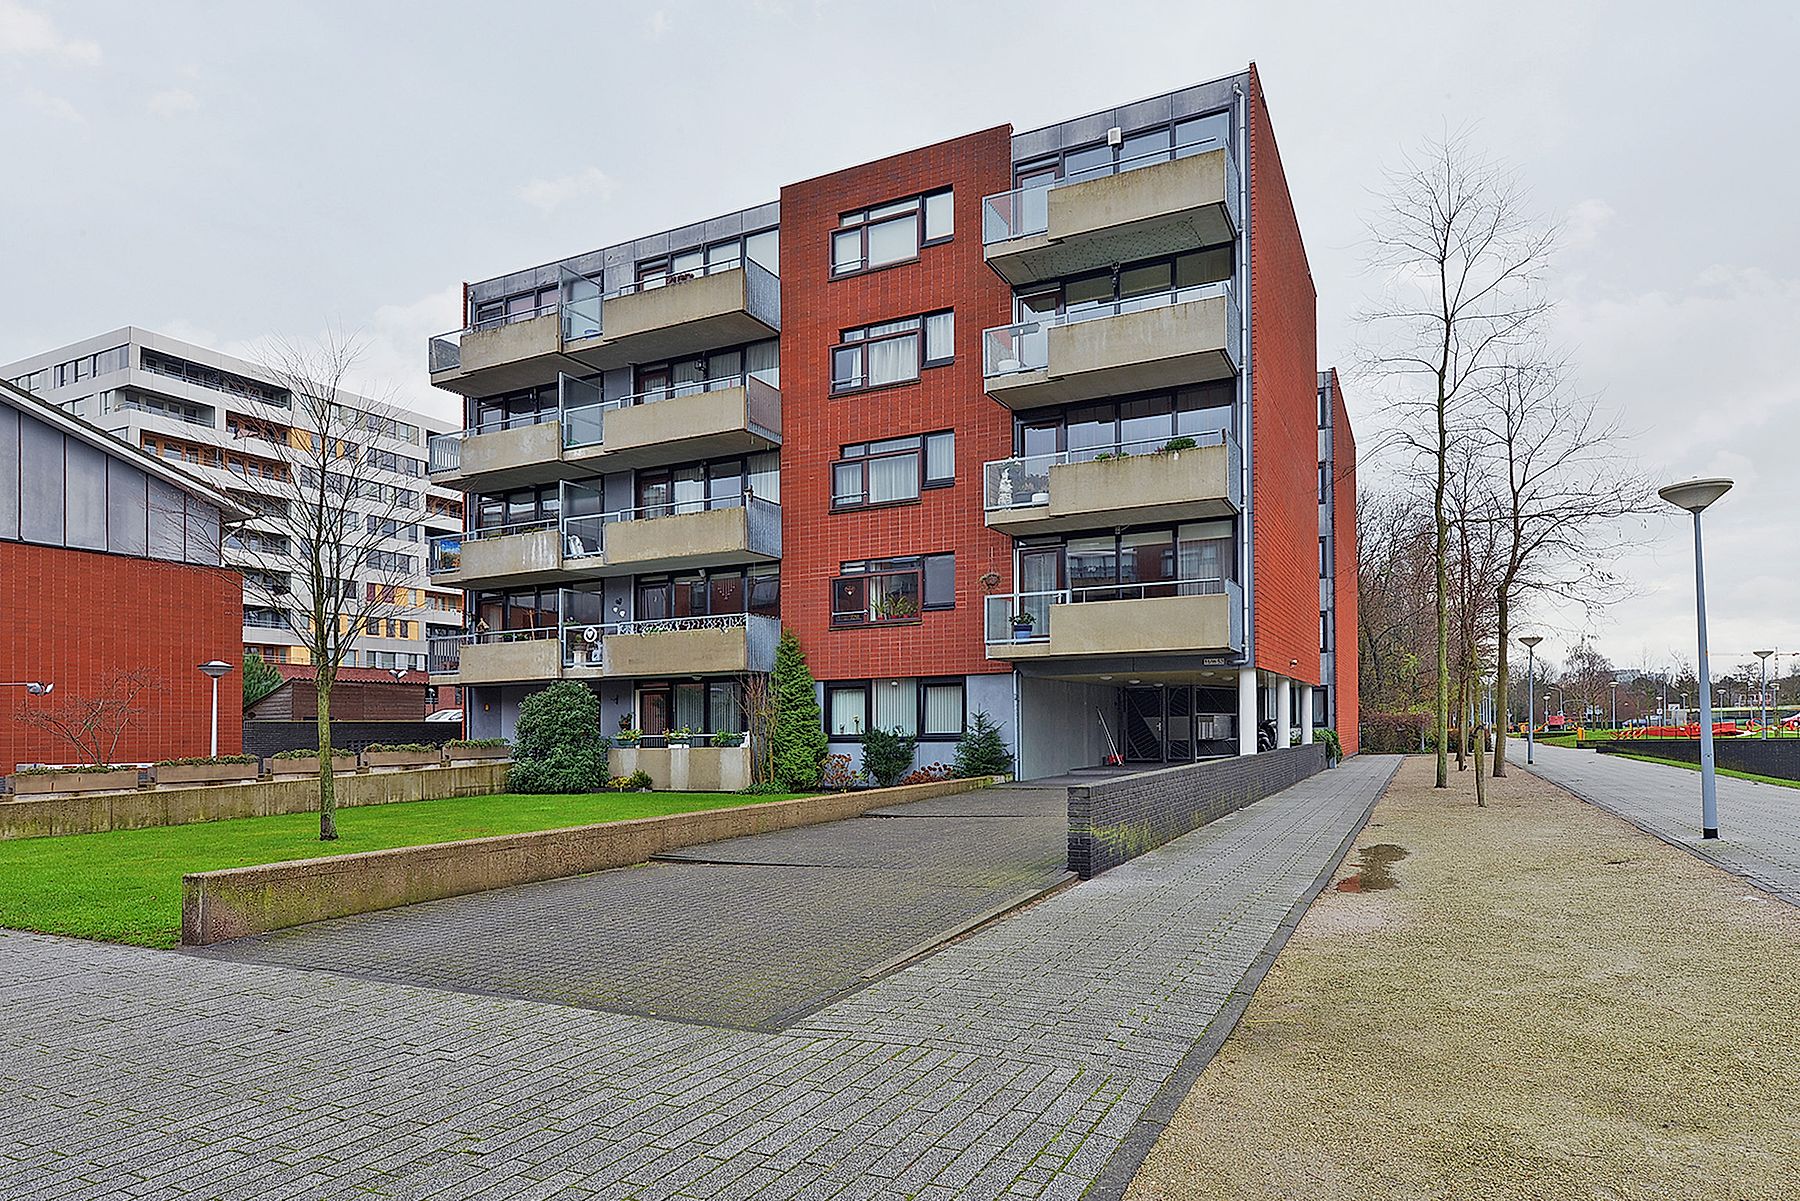 Bekijk foto 1/6 van apartment in Hoofddorp